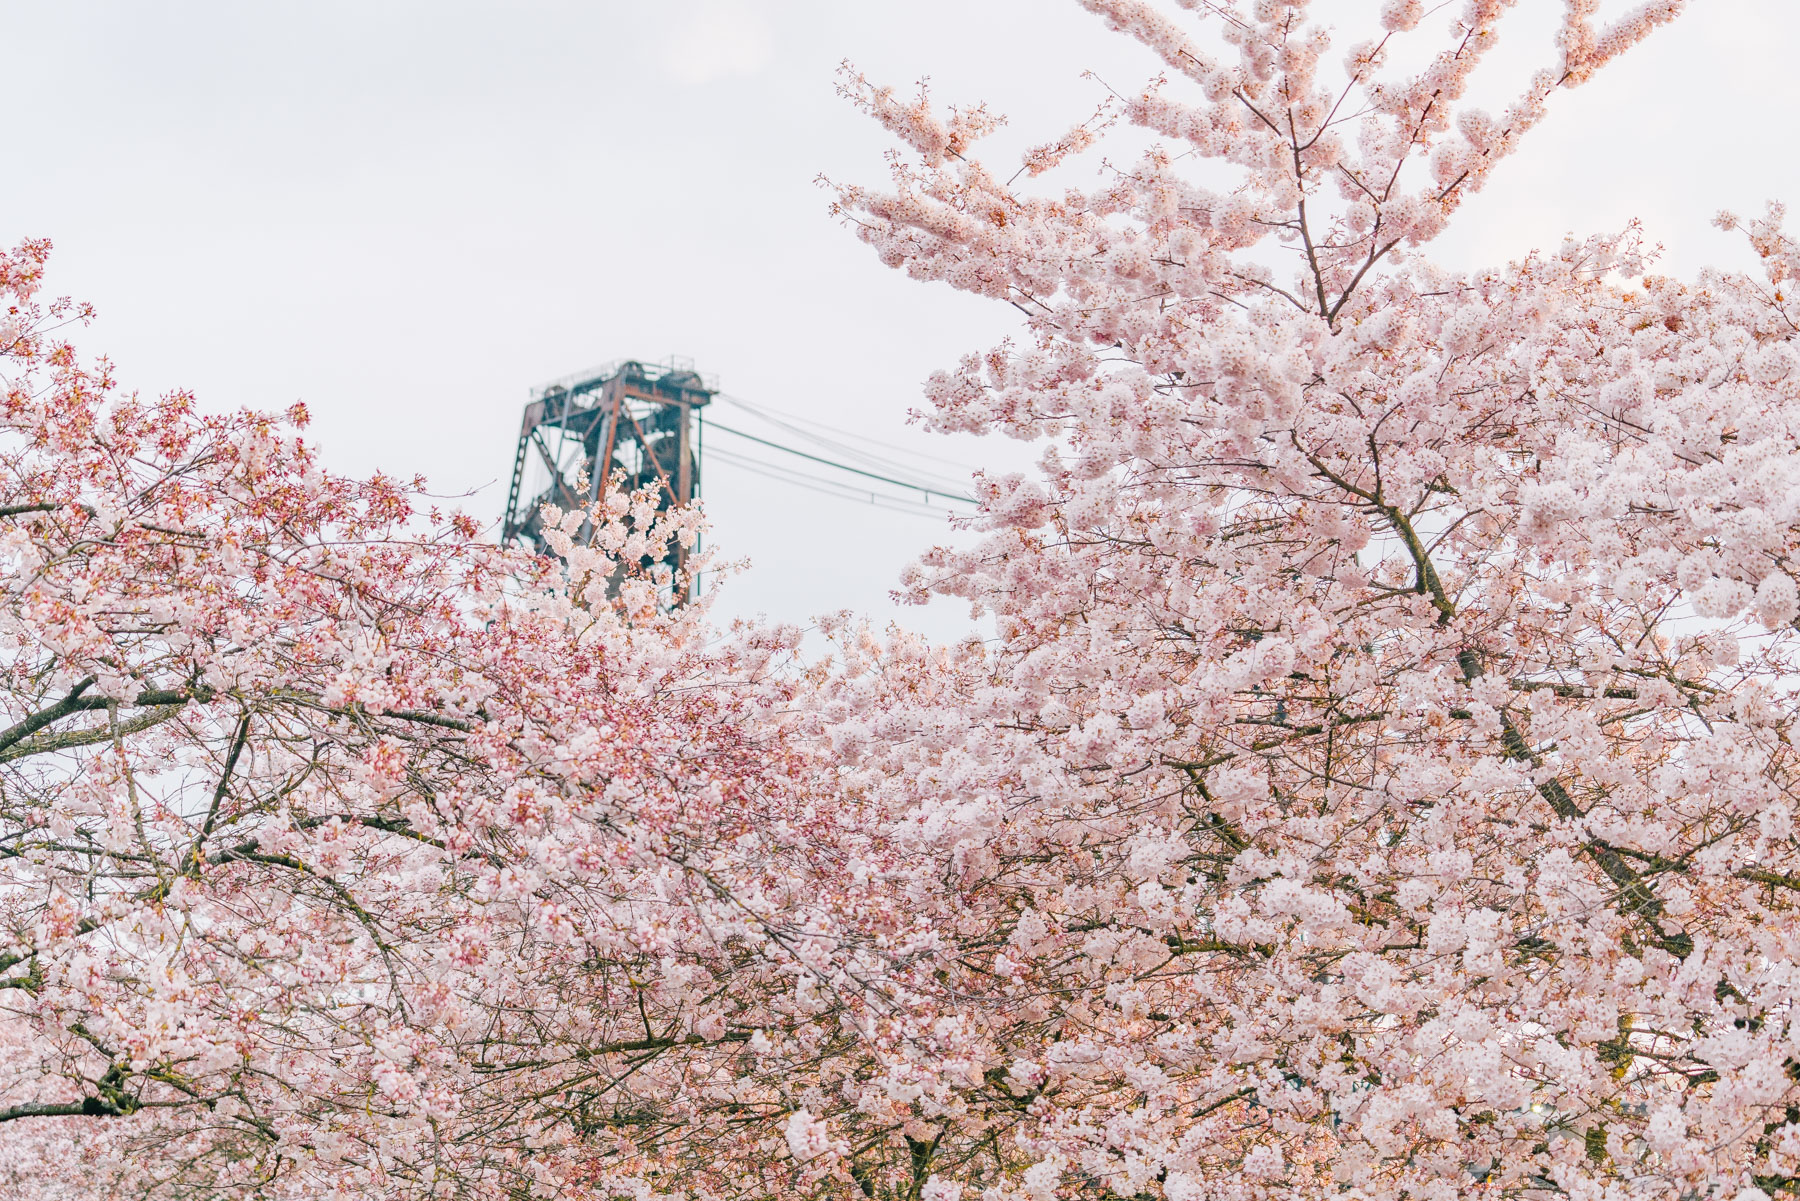 10 IMPRESSIVE Spots for Cherry Blossoms in Portland, Oregon (Video)